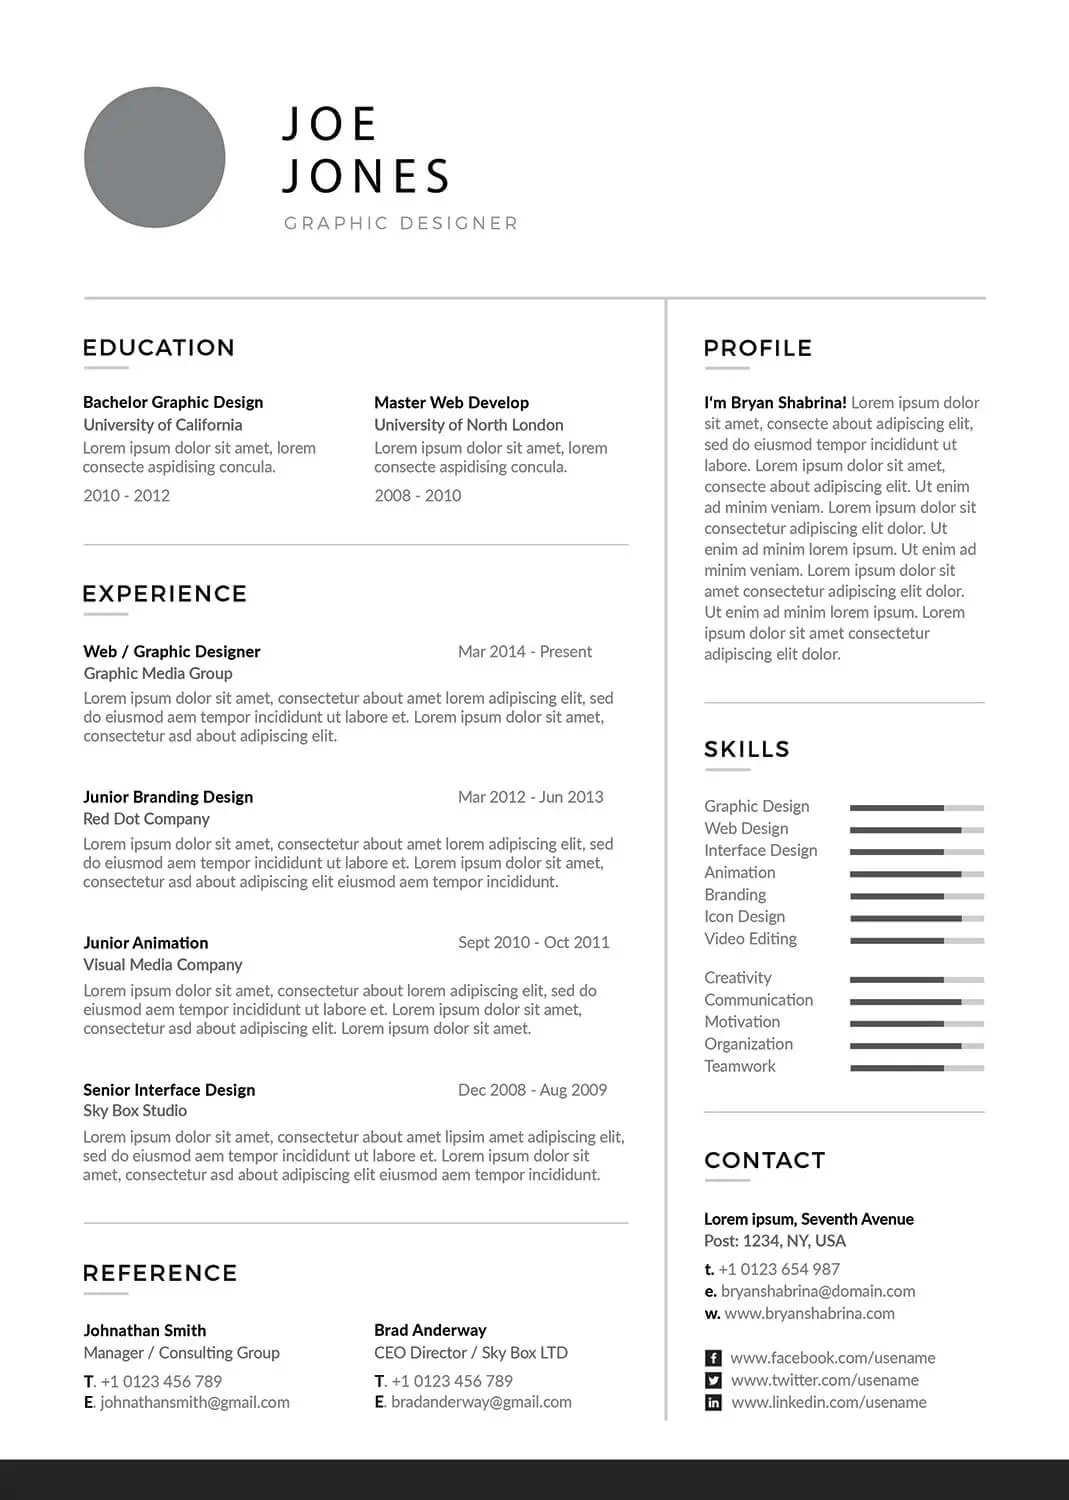 web-developer-resume